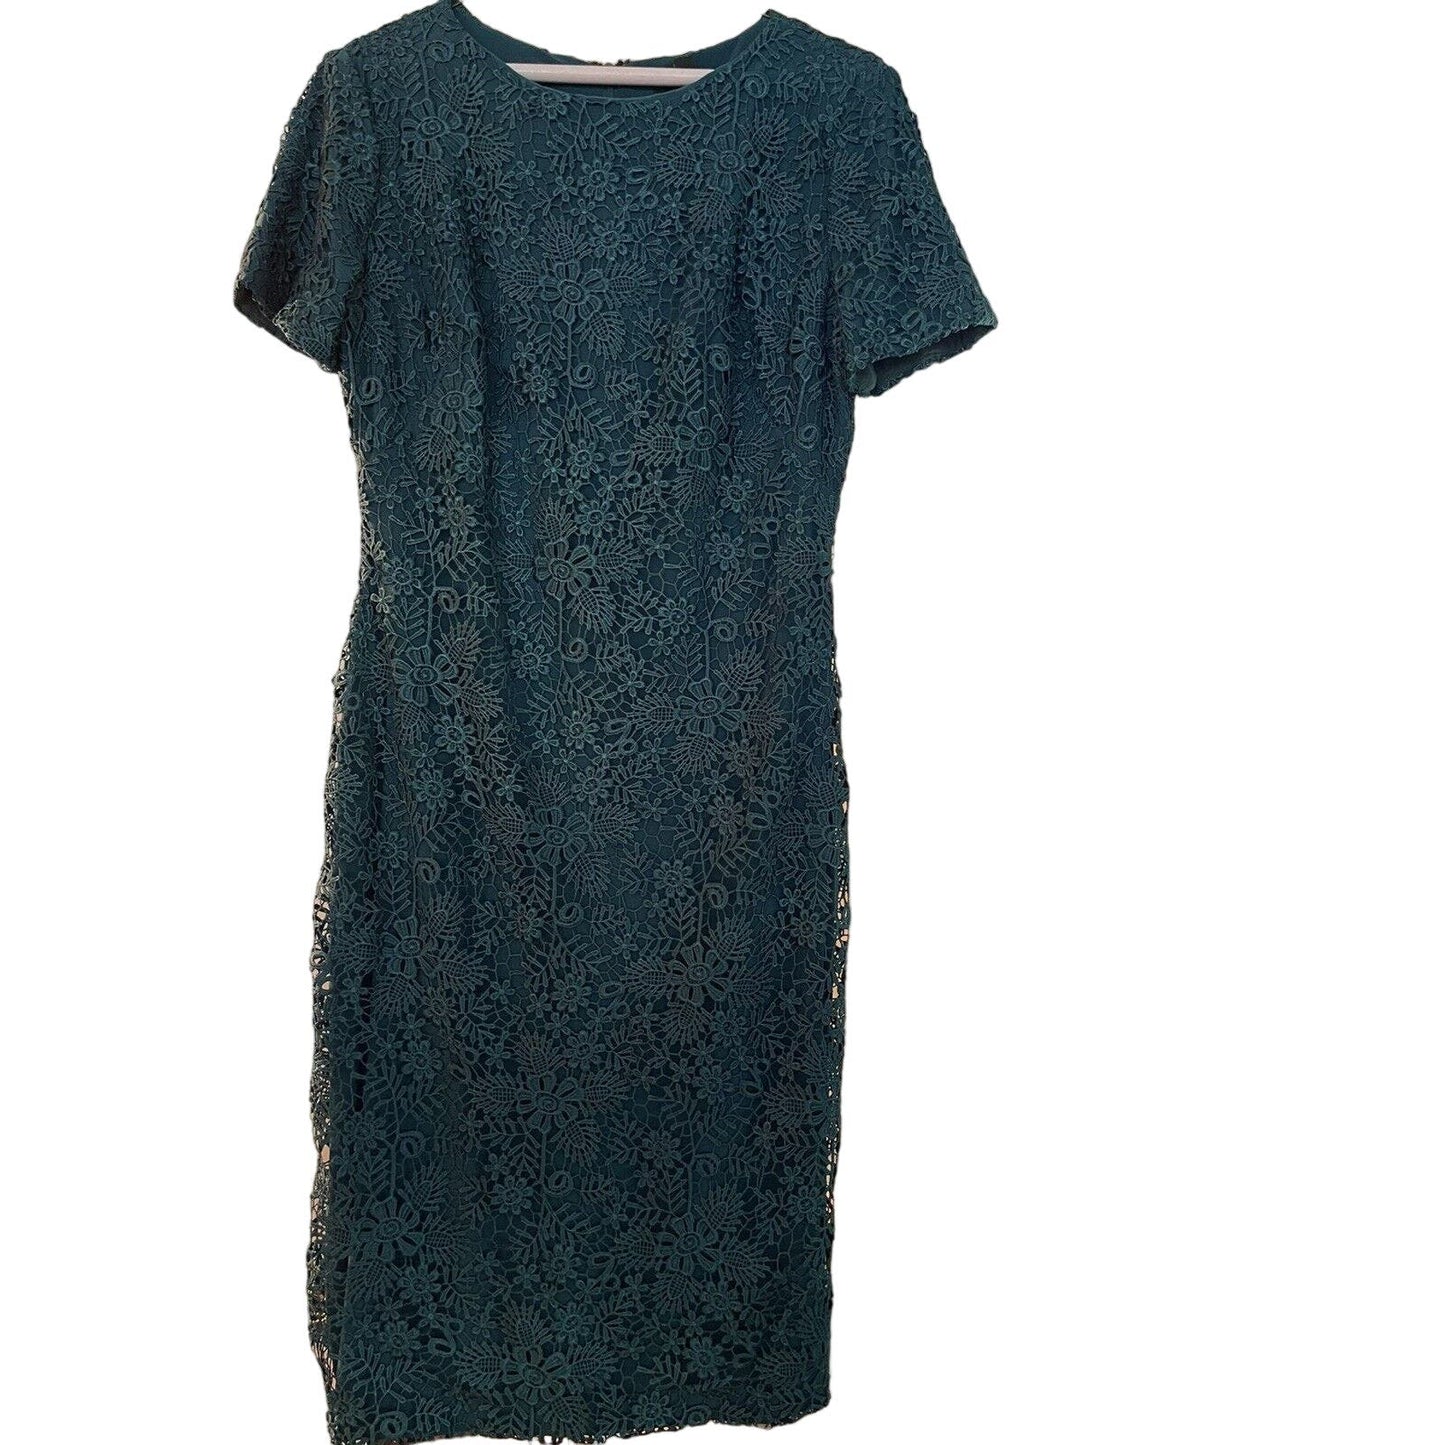 Lauren Ralph Lauren Woman Lattice Dress Size 8 Green/Blue